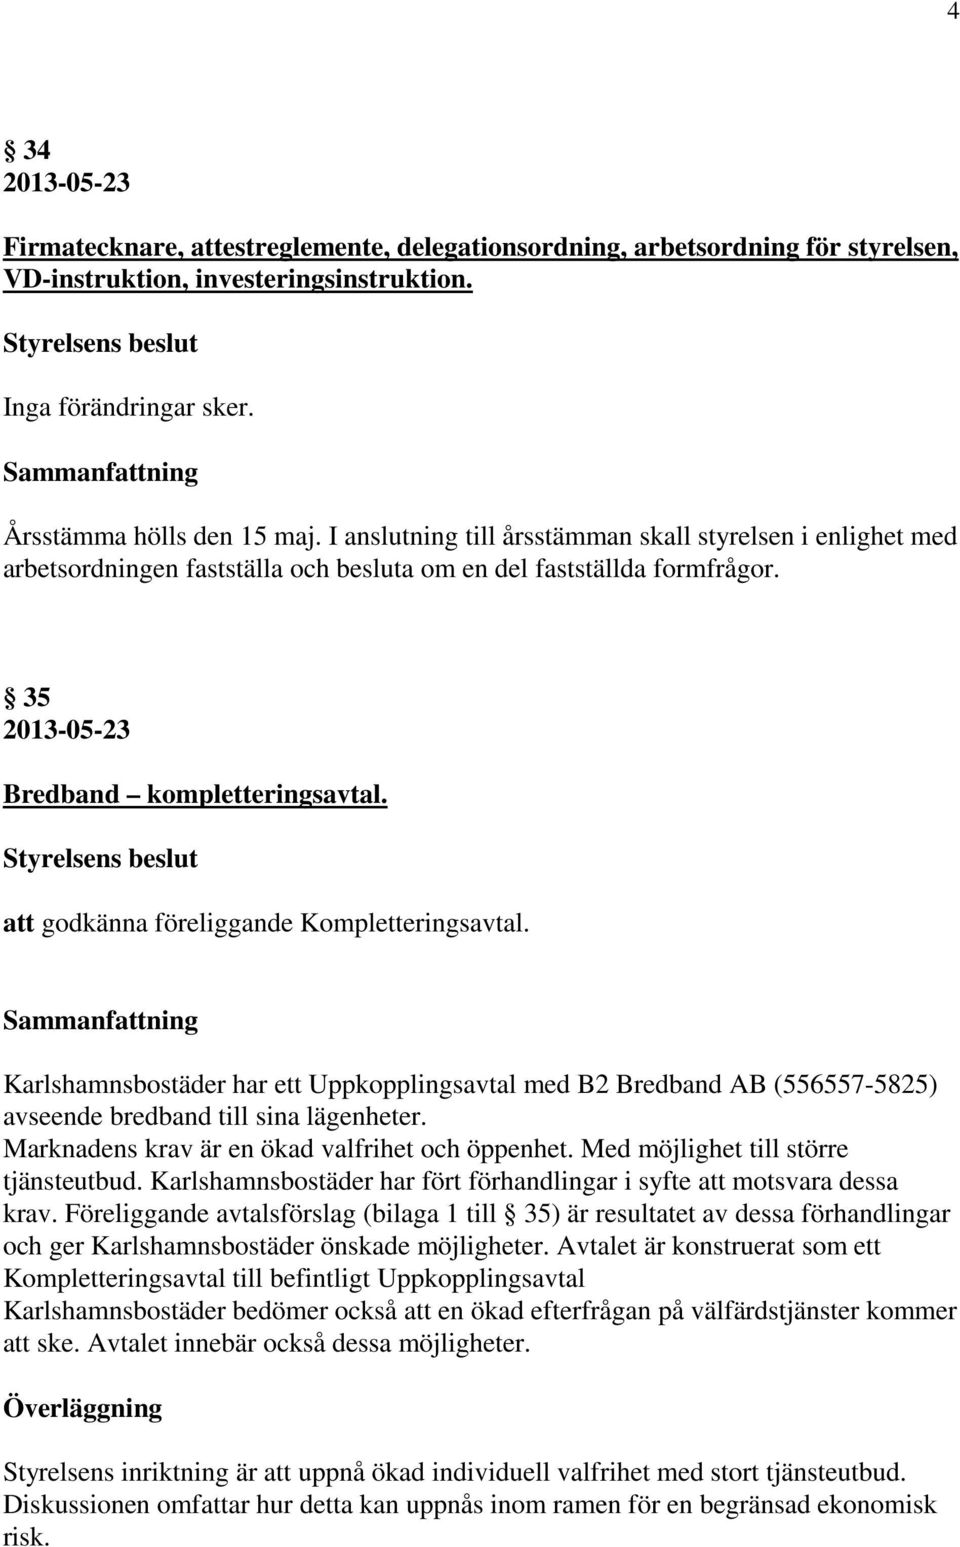 att godkänna föreliggande Kompletteringsavtal. Karlshamnsbostäder har ett Uppkopplingsavtal med B2 Bredband AB (556557-5825) avseende bredband till sina lägenheter.